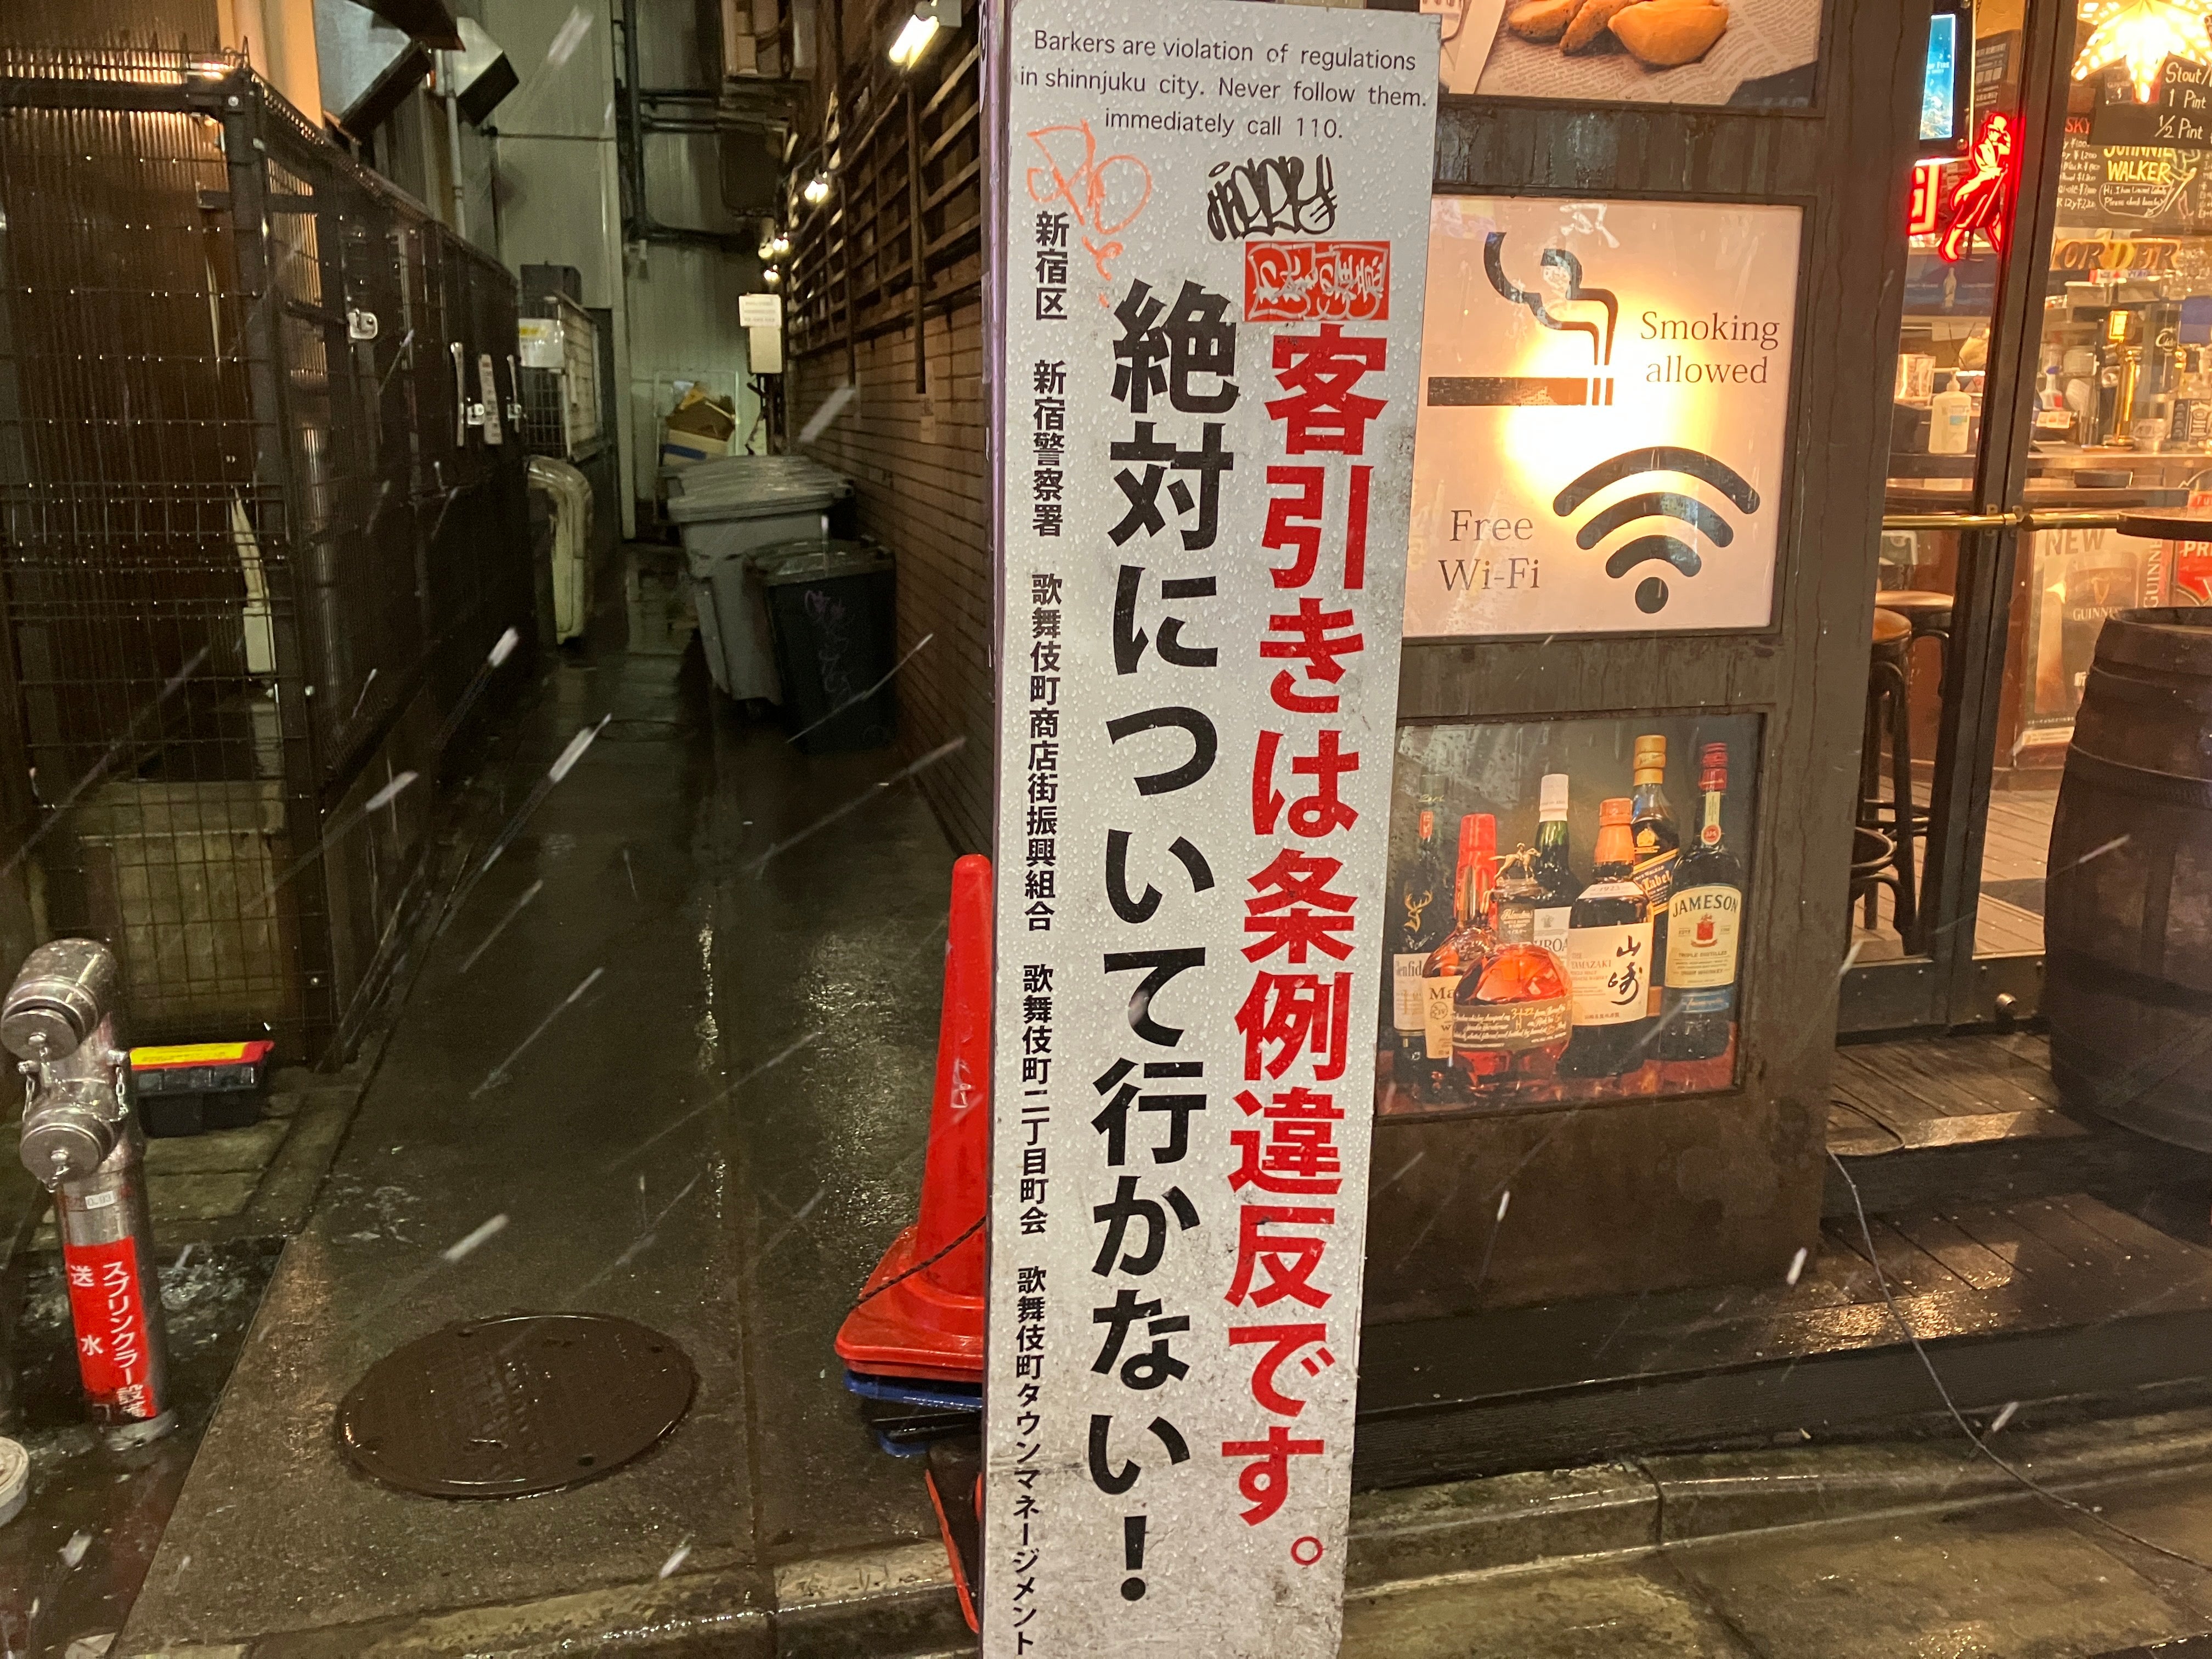 歌舞伎町のぼったくり居酒屋。泣き寝入りするしかない理由 | TBSラジオ